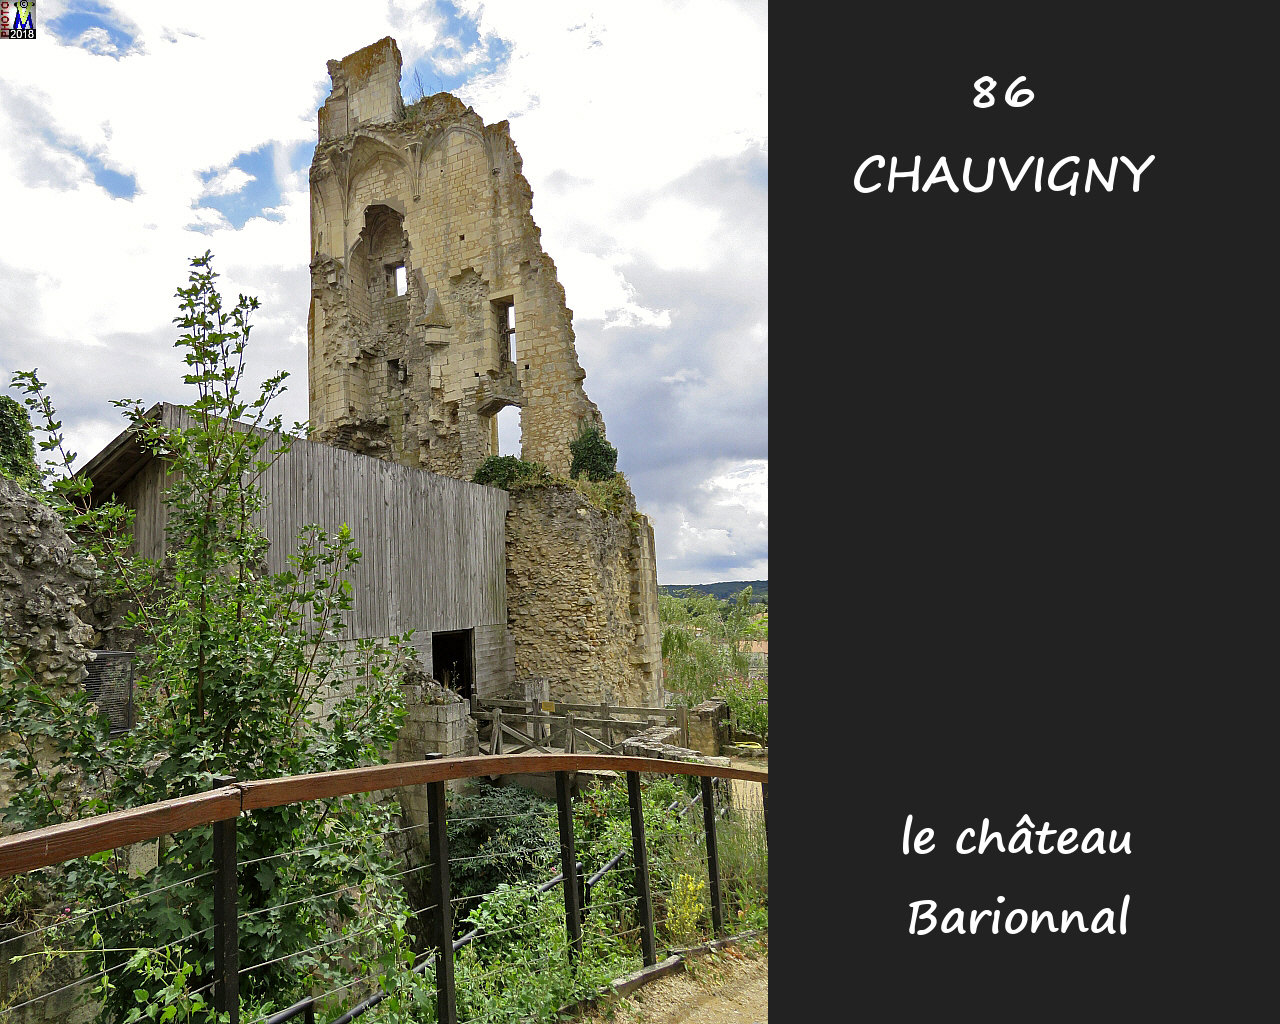 86CHAUVIGNY_chateau-Barionnal_1016.jpg